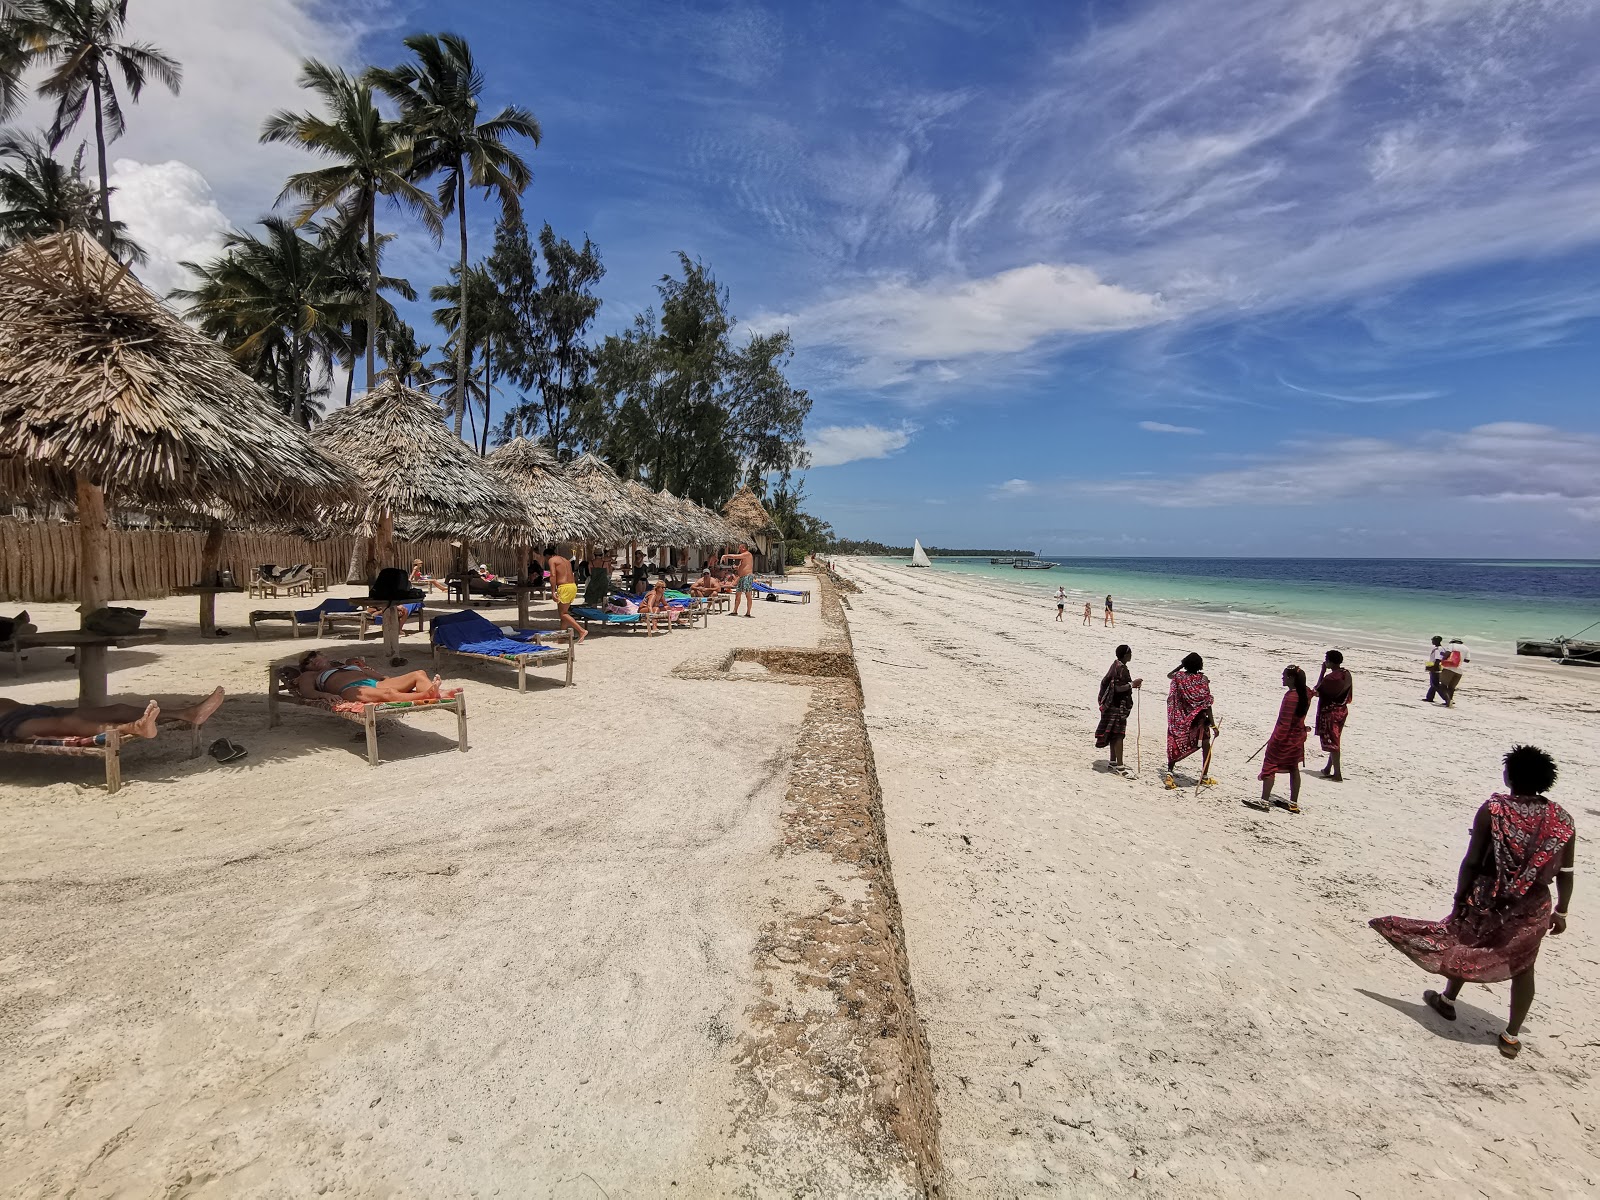 Foto di Uroa Public Beach con una superficie del sabbia bianca